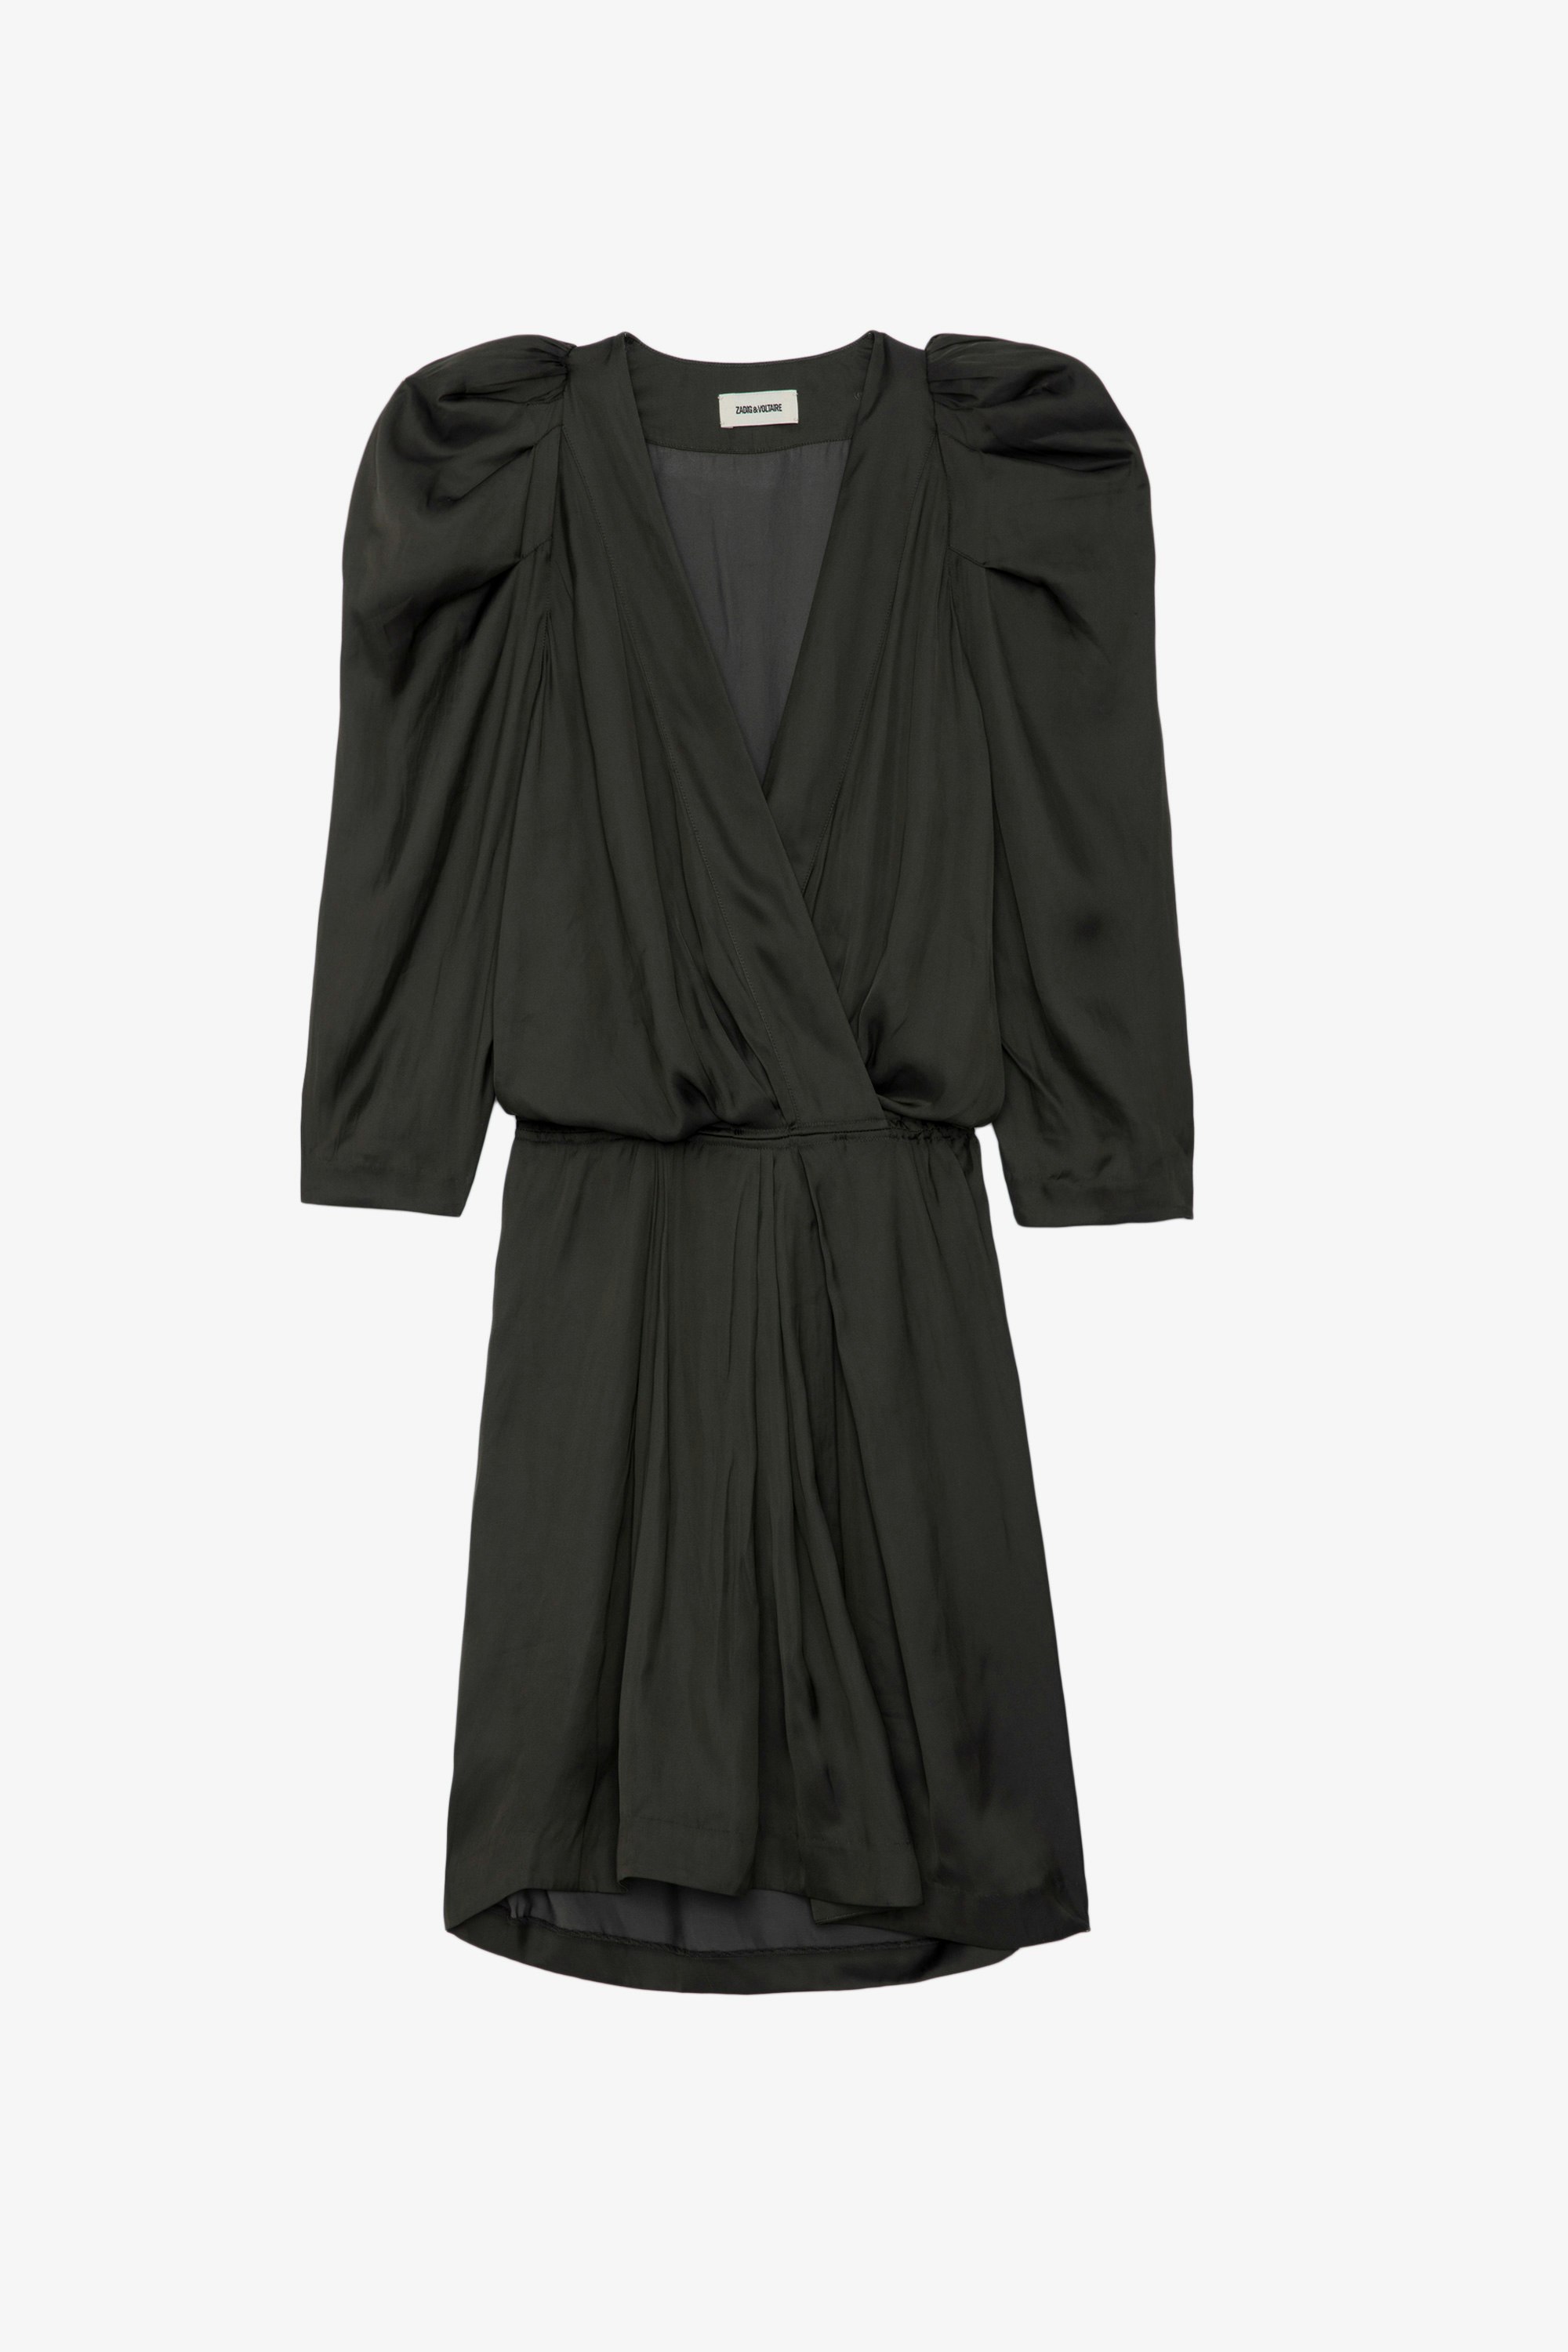 Robe Ruz Satin - Robe courte en satin anthracite à manches 3/4, taille élastiquée et fronces aux épaules.